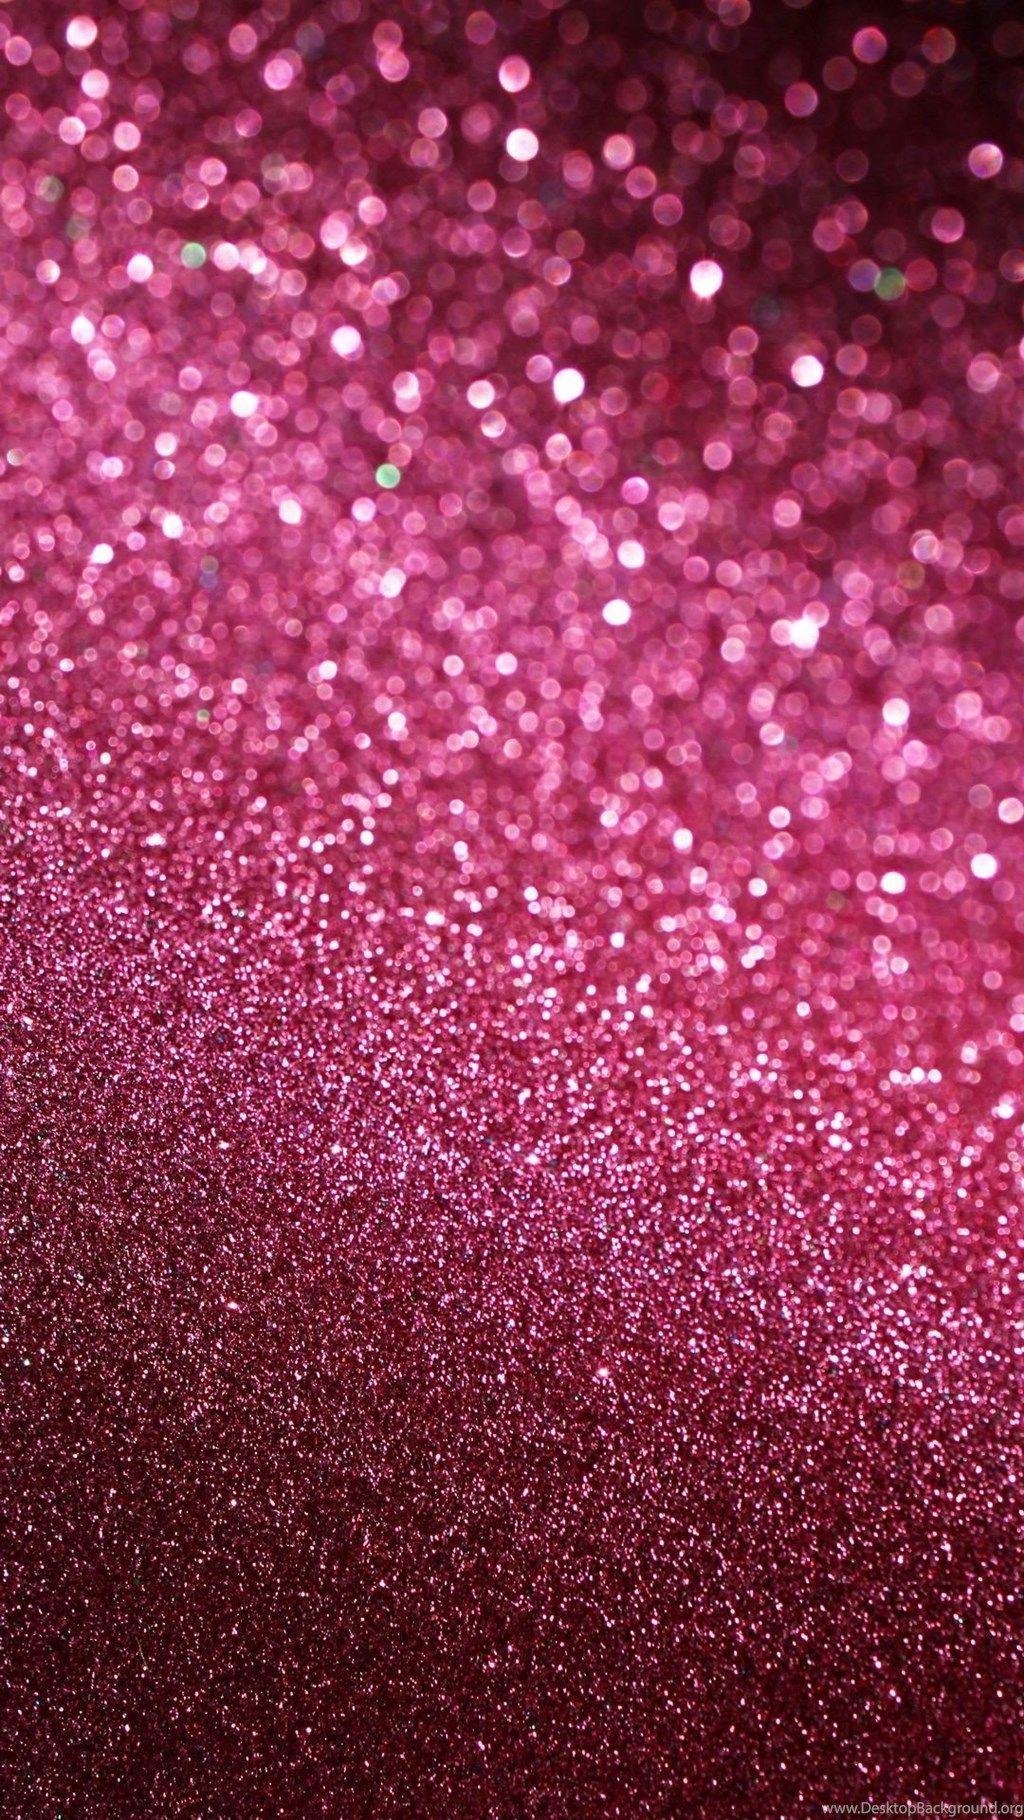 LV wallpaper  Pink glitter wallpaper, Iphone wallpaper glitter, Iphone  wallpaper girly